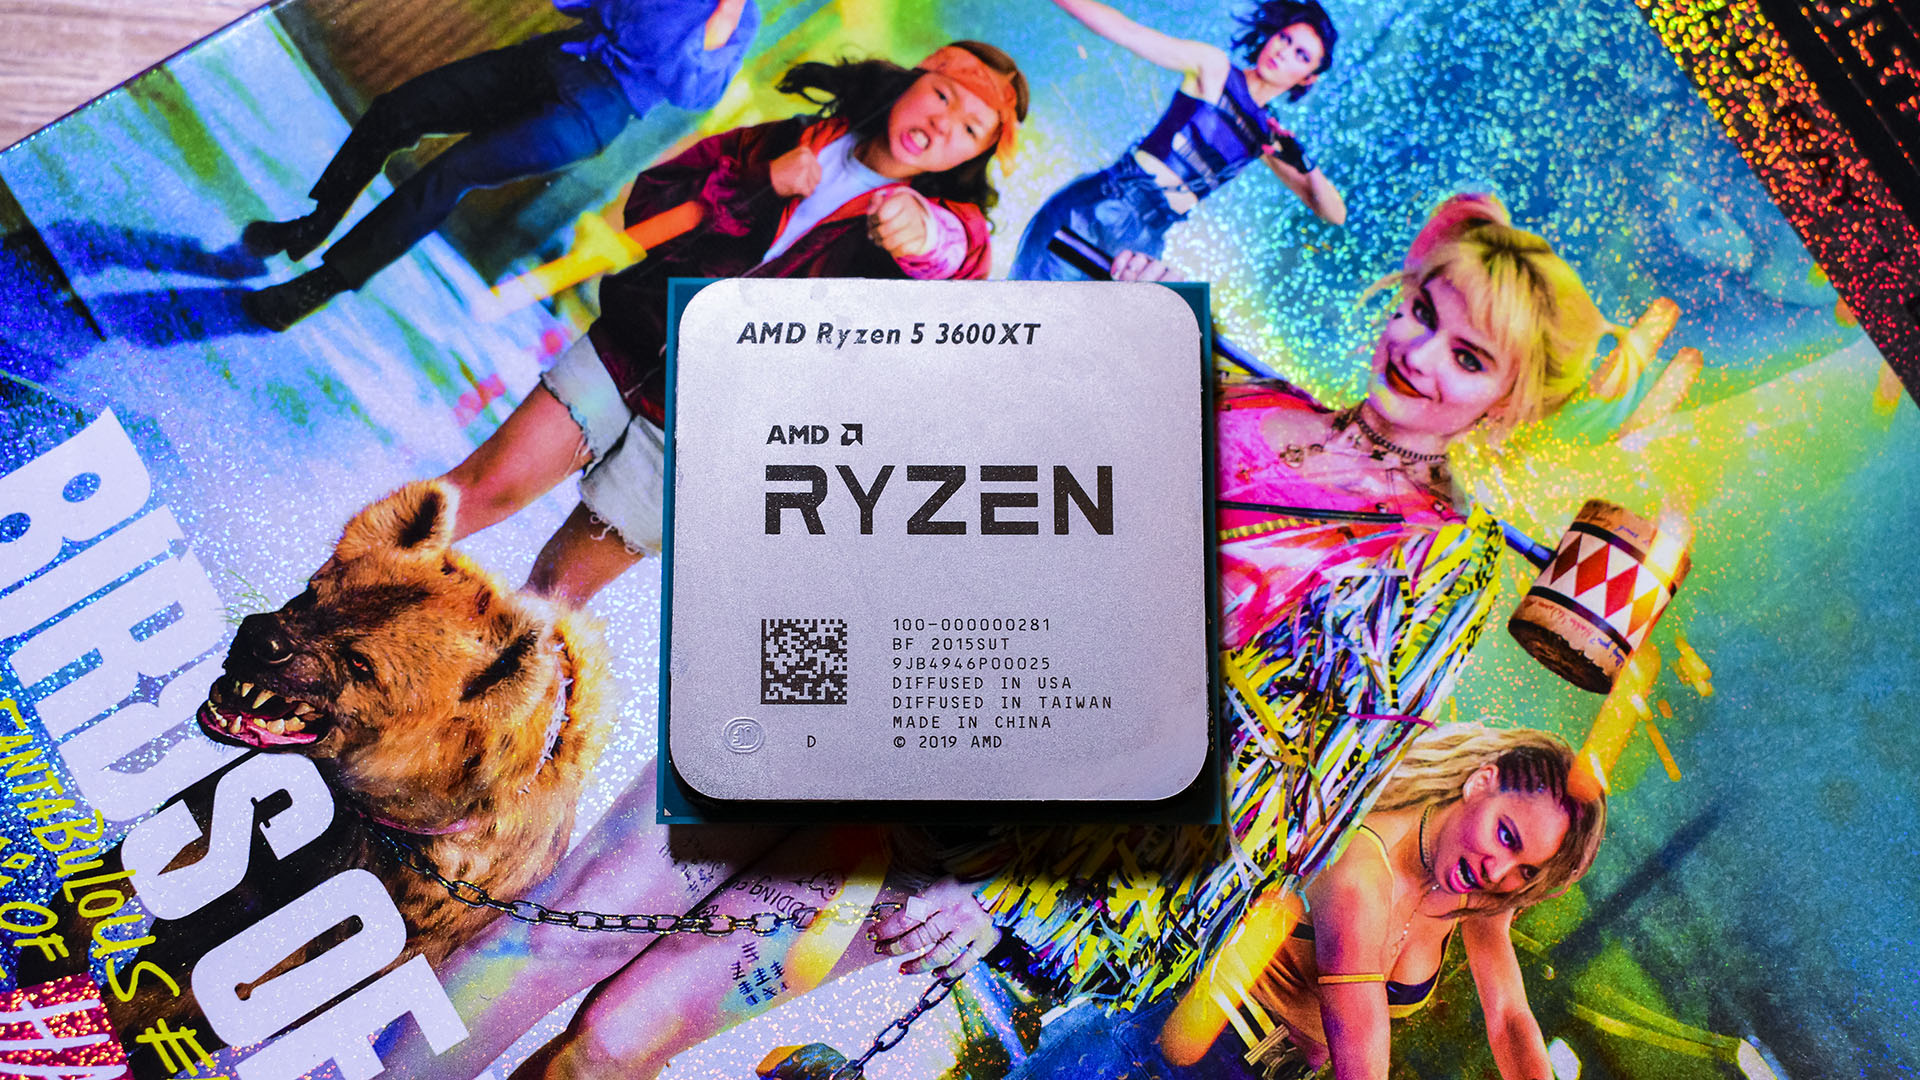 AMD Ryzen 5 XT review   TechRadar